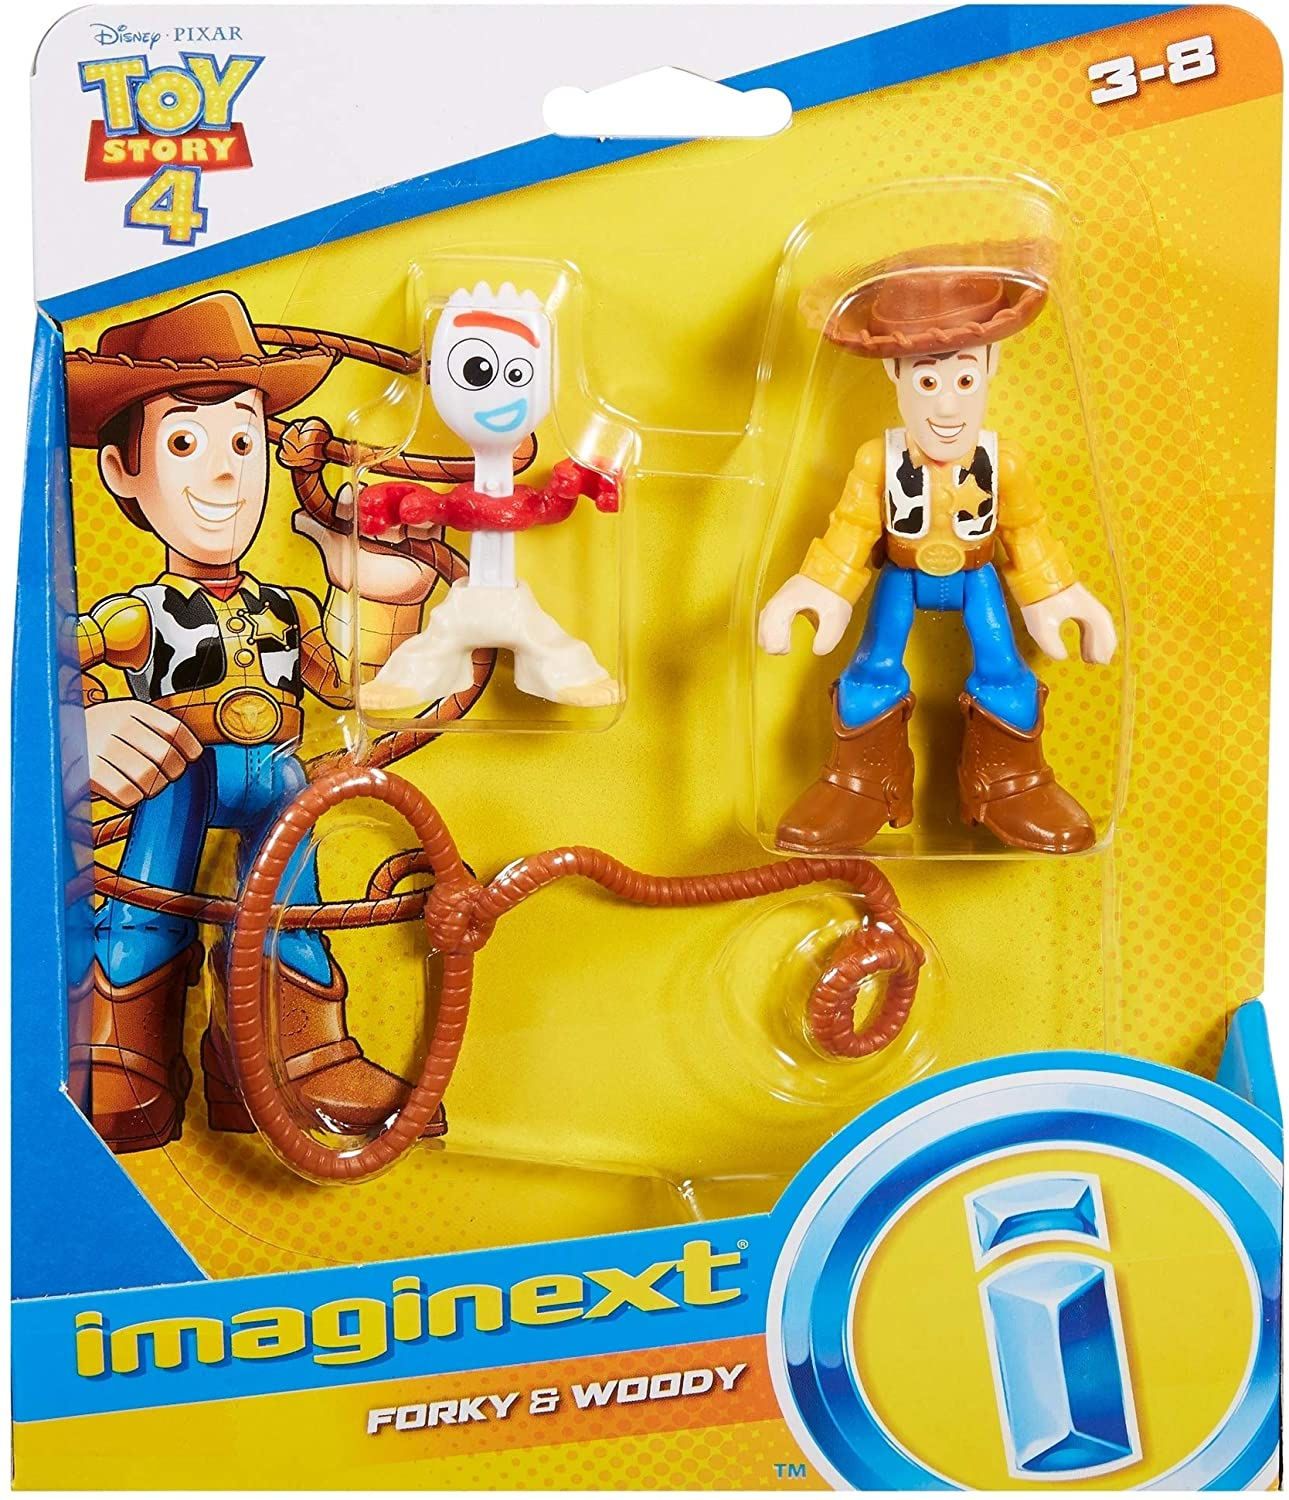 Carrinho Hot Wheels Woody Toy Story em Promoção na Americanas